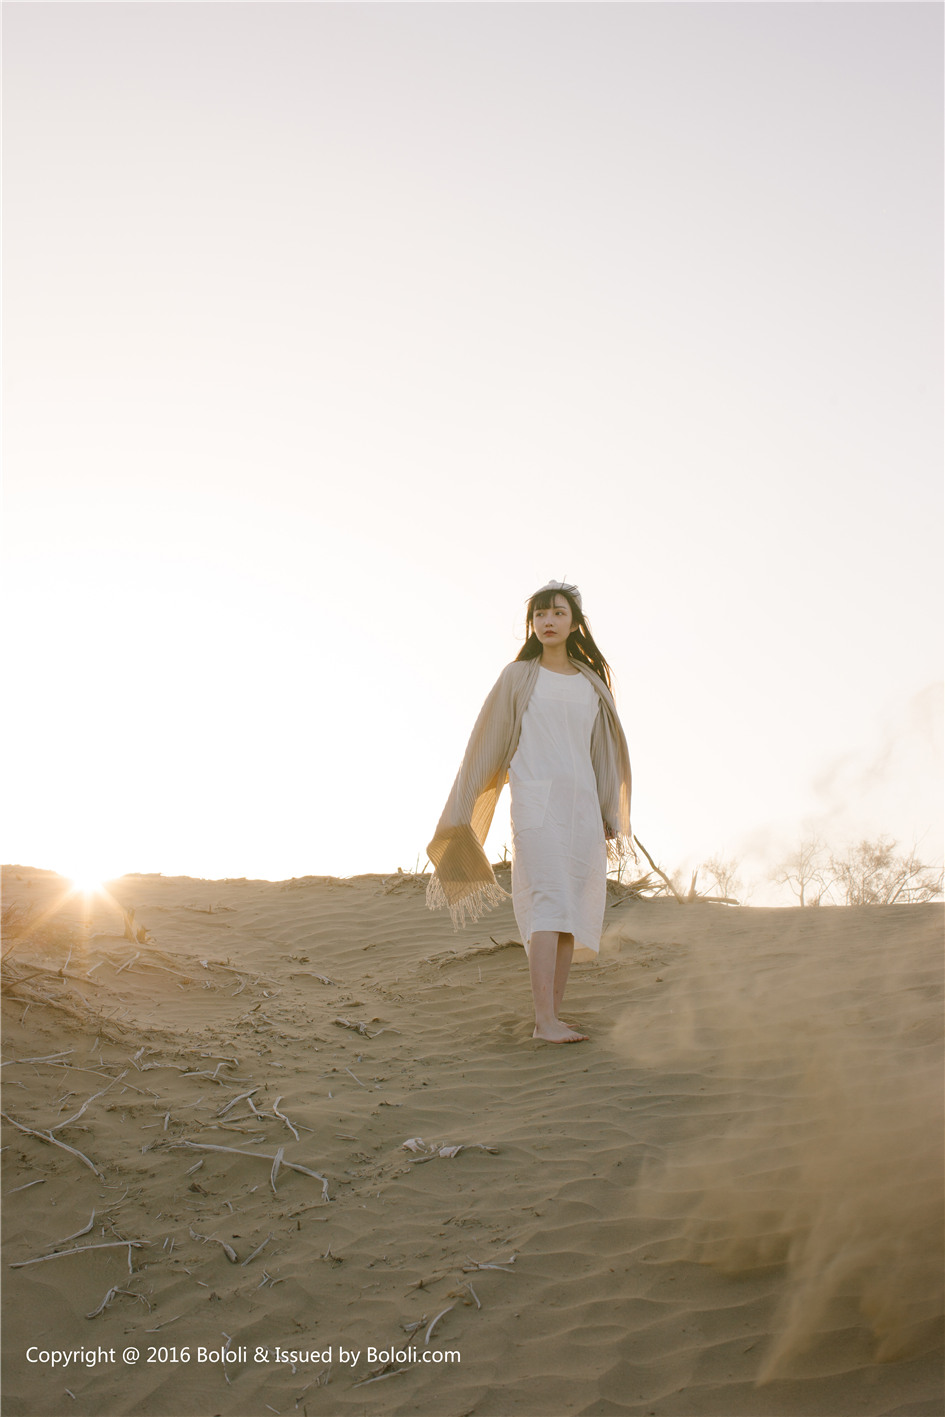 日系偶像女团KIMOE KIM009 沙漠之应 - 之应写真外景图片第4张